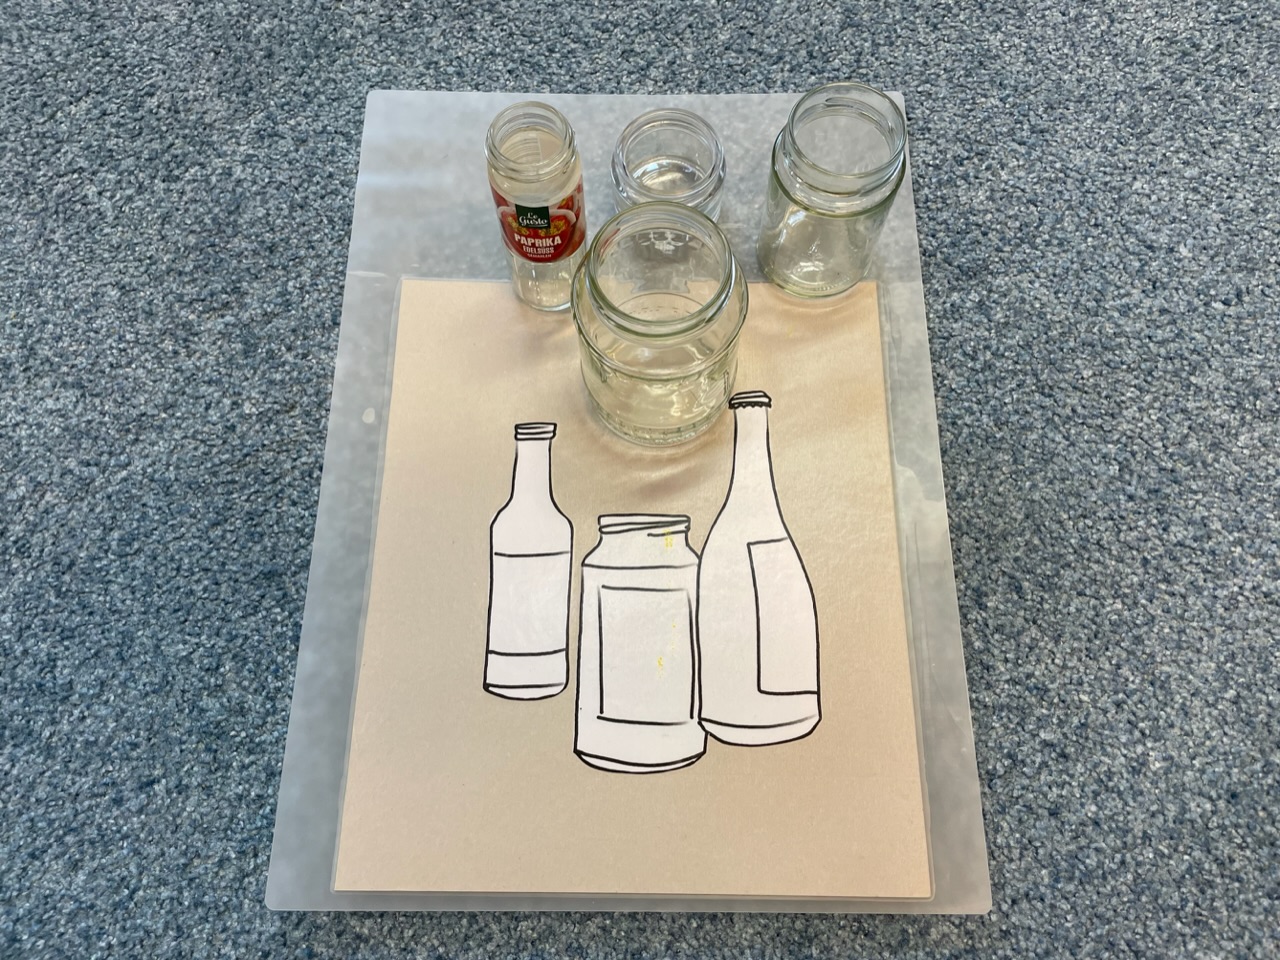 Bild zum Schritt 12 für das Bastel- und DIY-Abenteuer für Kinder: 'Ideen für Glas- Müll: Marmeladenglas, Milchflasche von Babynahrung, Gewürzglas, Wegwerfflaschen...'